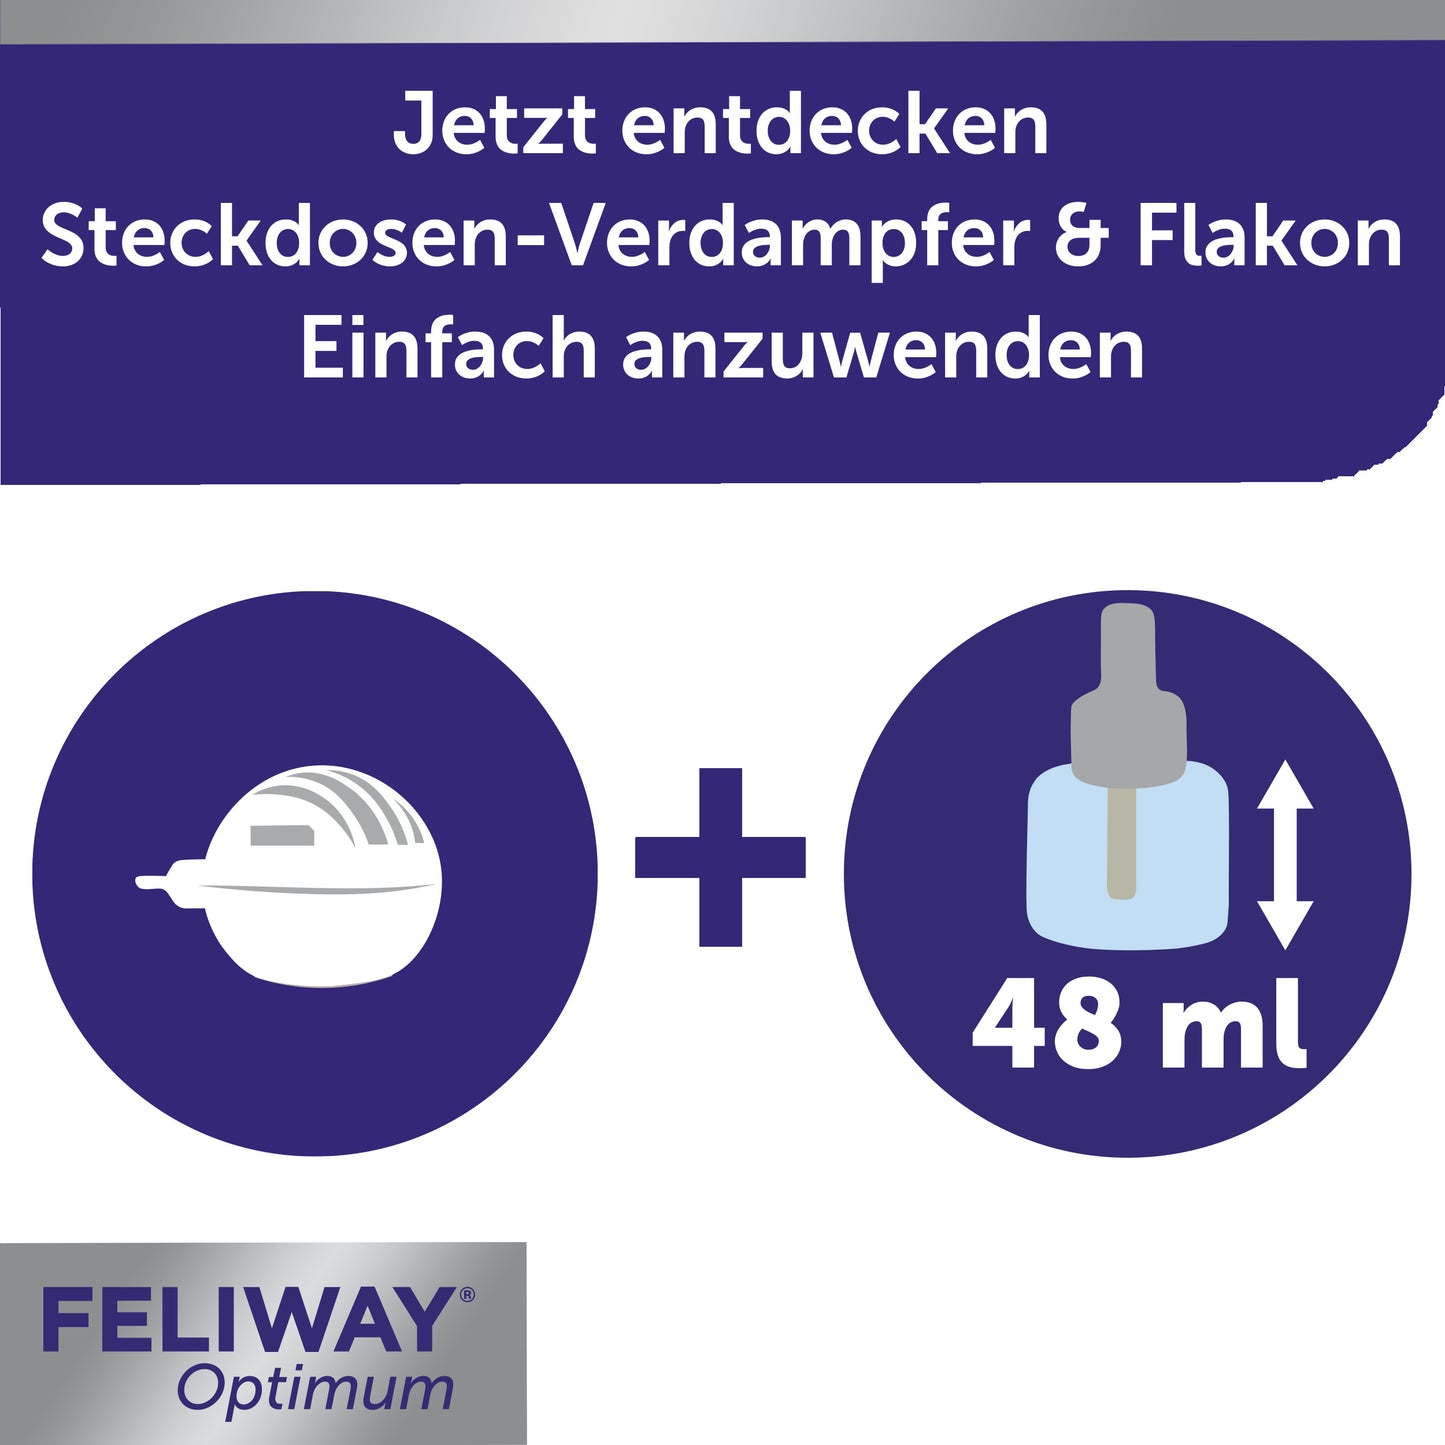 FELIWAY Optimum Verdampfer Stecker und Flakon enthält 48 ml